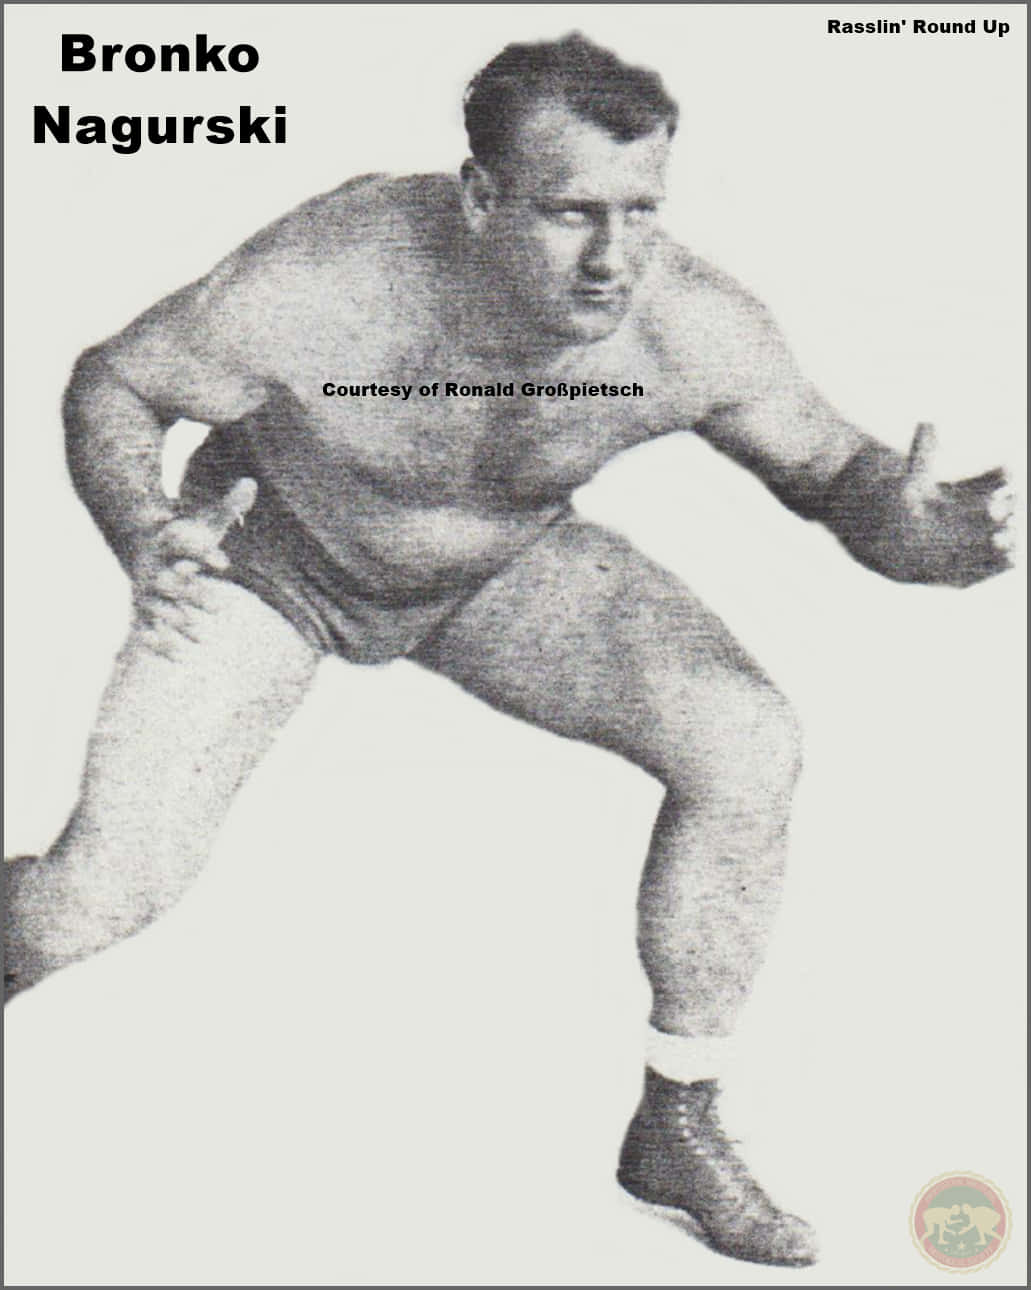 Bronko Nagurski All-American Pro Wrestler bliver hugget i konturer mod en lyserød guld baggrund. Wallpaper